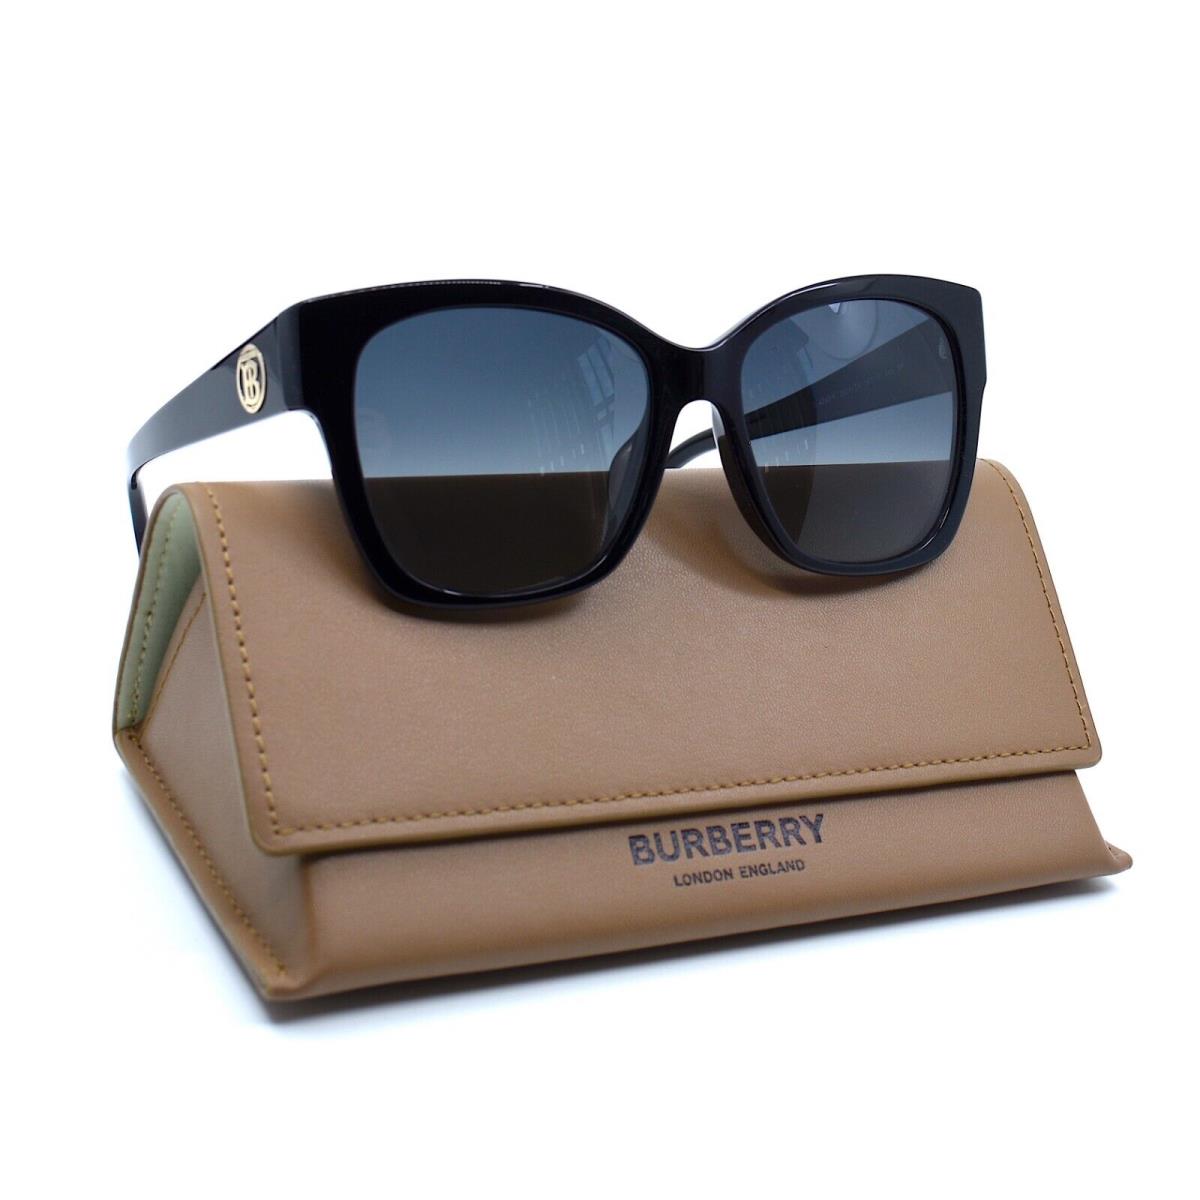 Burberry sunglasses  - BLACK Frame, Gray Lens